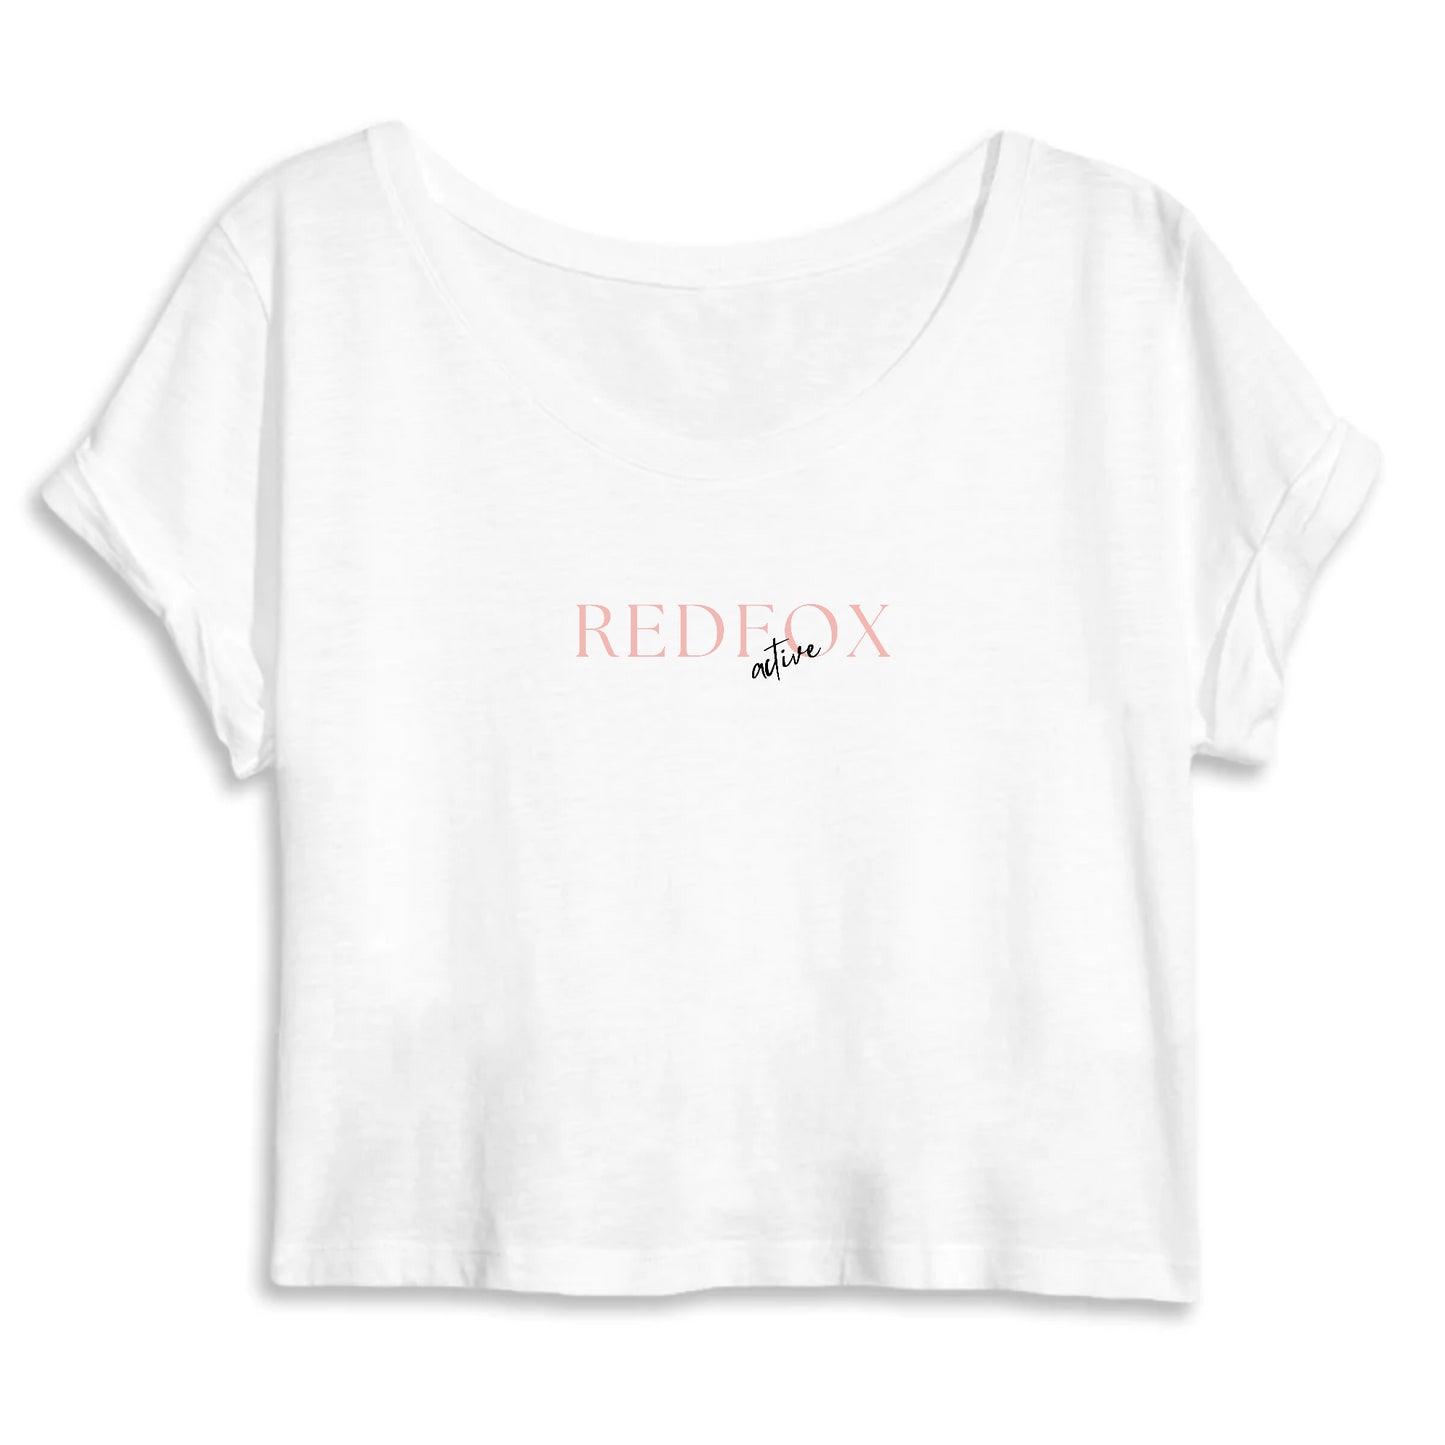 T-shirt court mode - REDFOX Active Pink MANTIS - 100% coton biologique